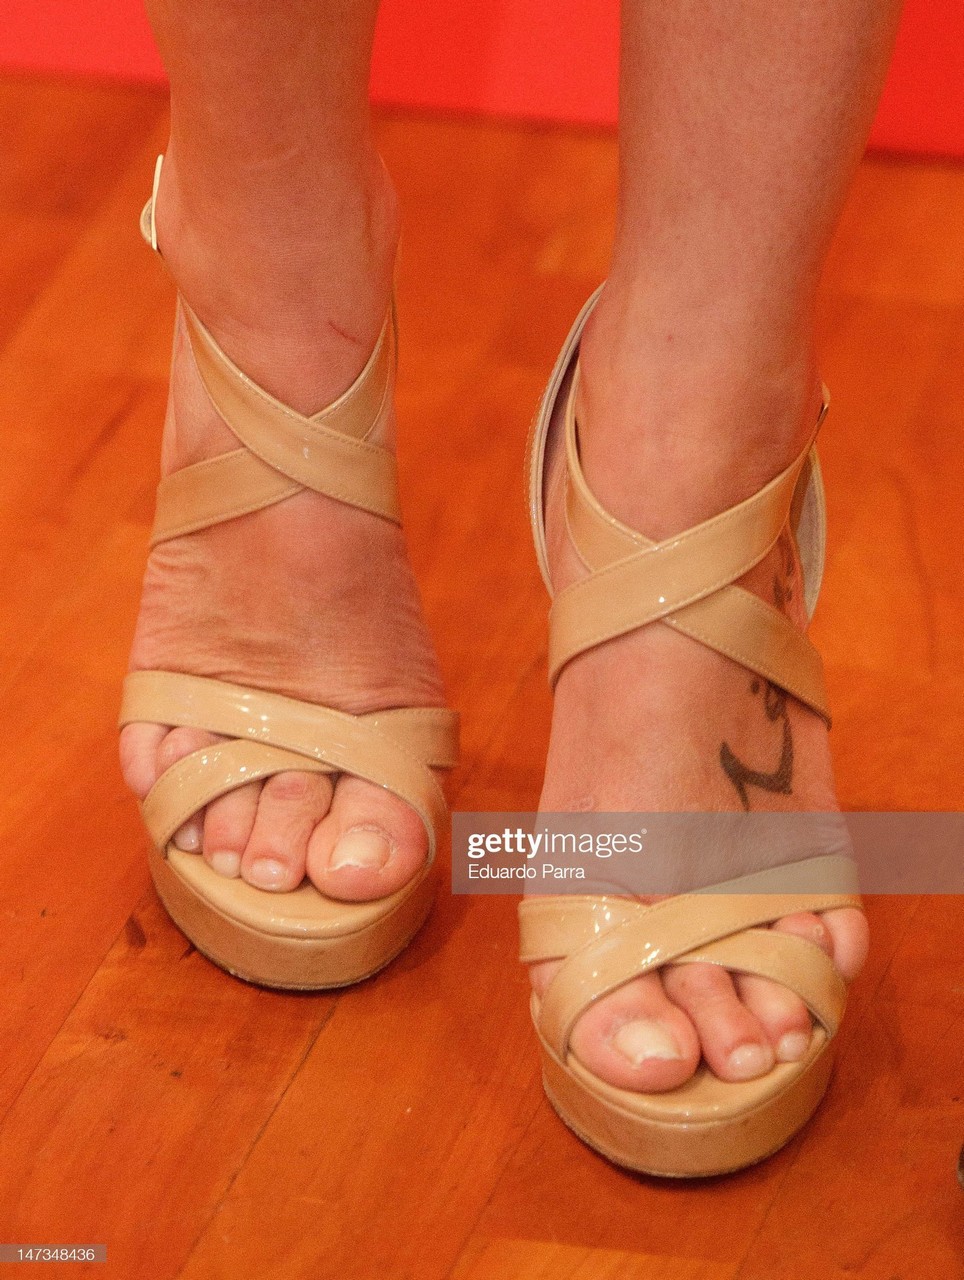 Eva Gonzalez Feet